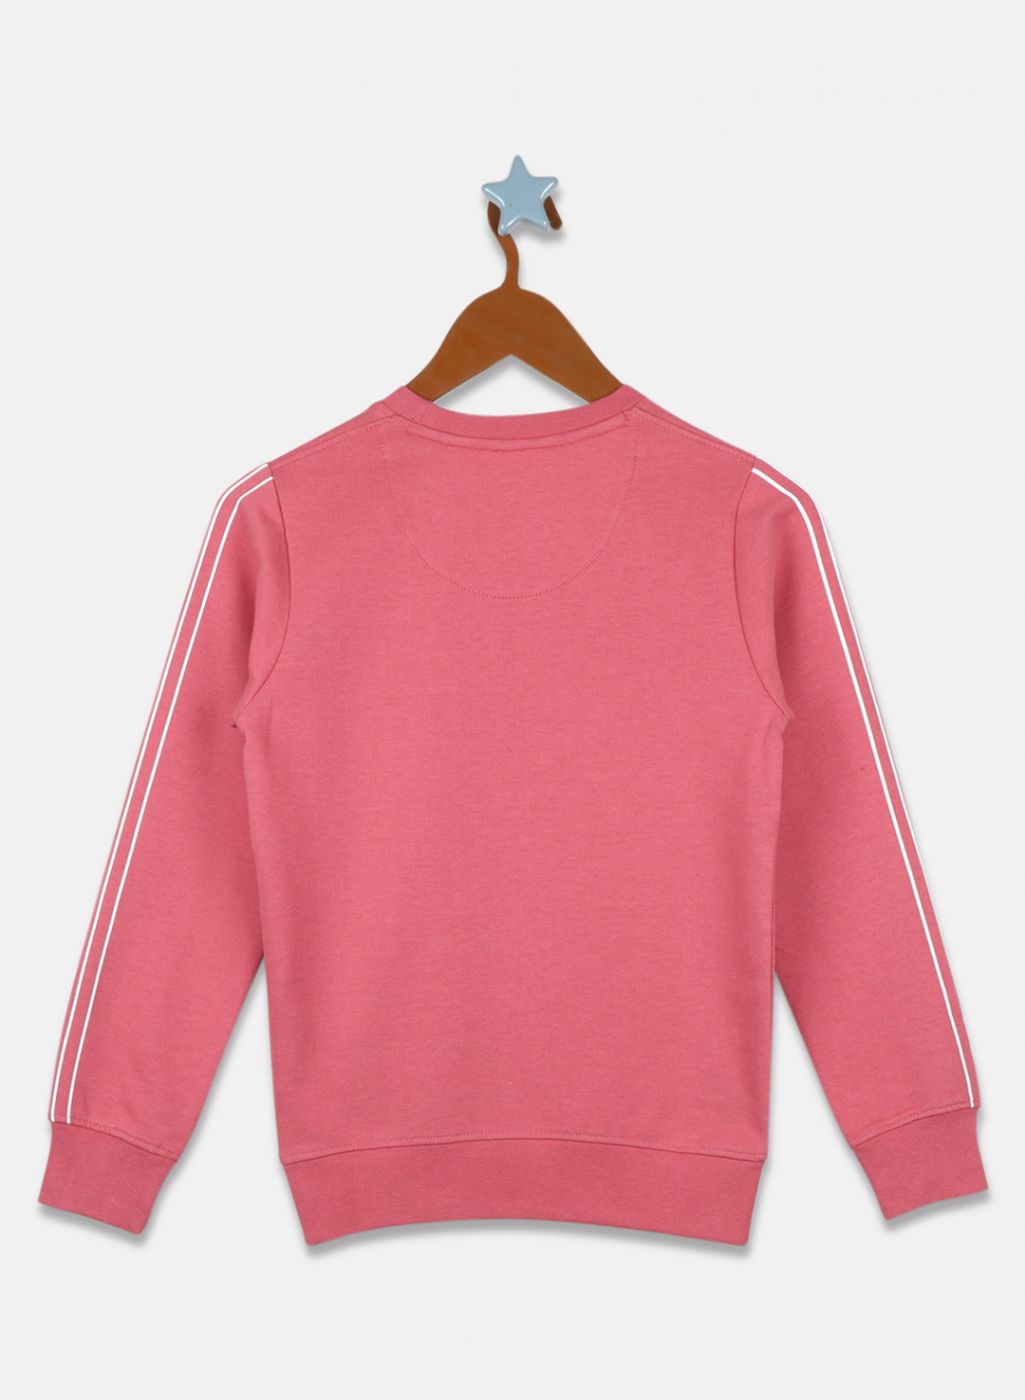 Boys Pink Printed Sweatshirt